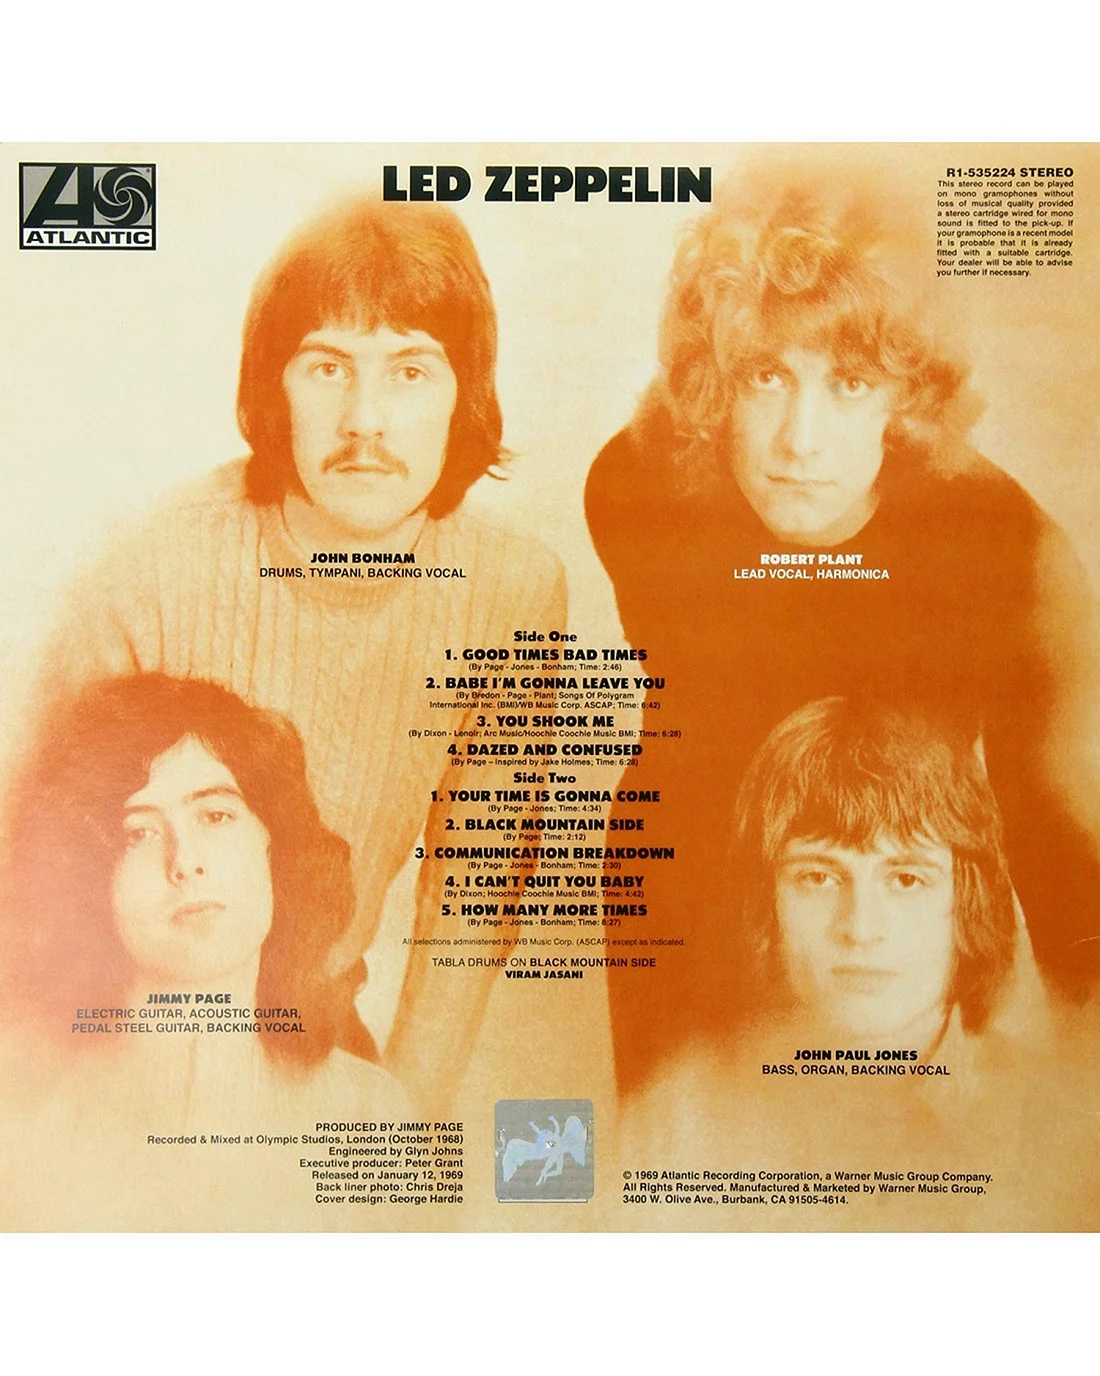 Led Zeppelin 1 Wallpaper For iPhone